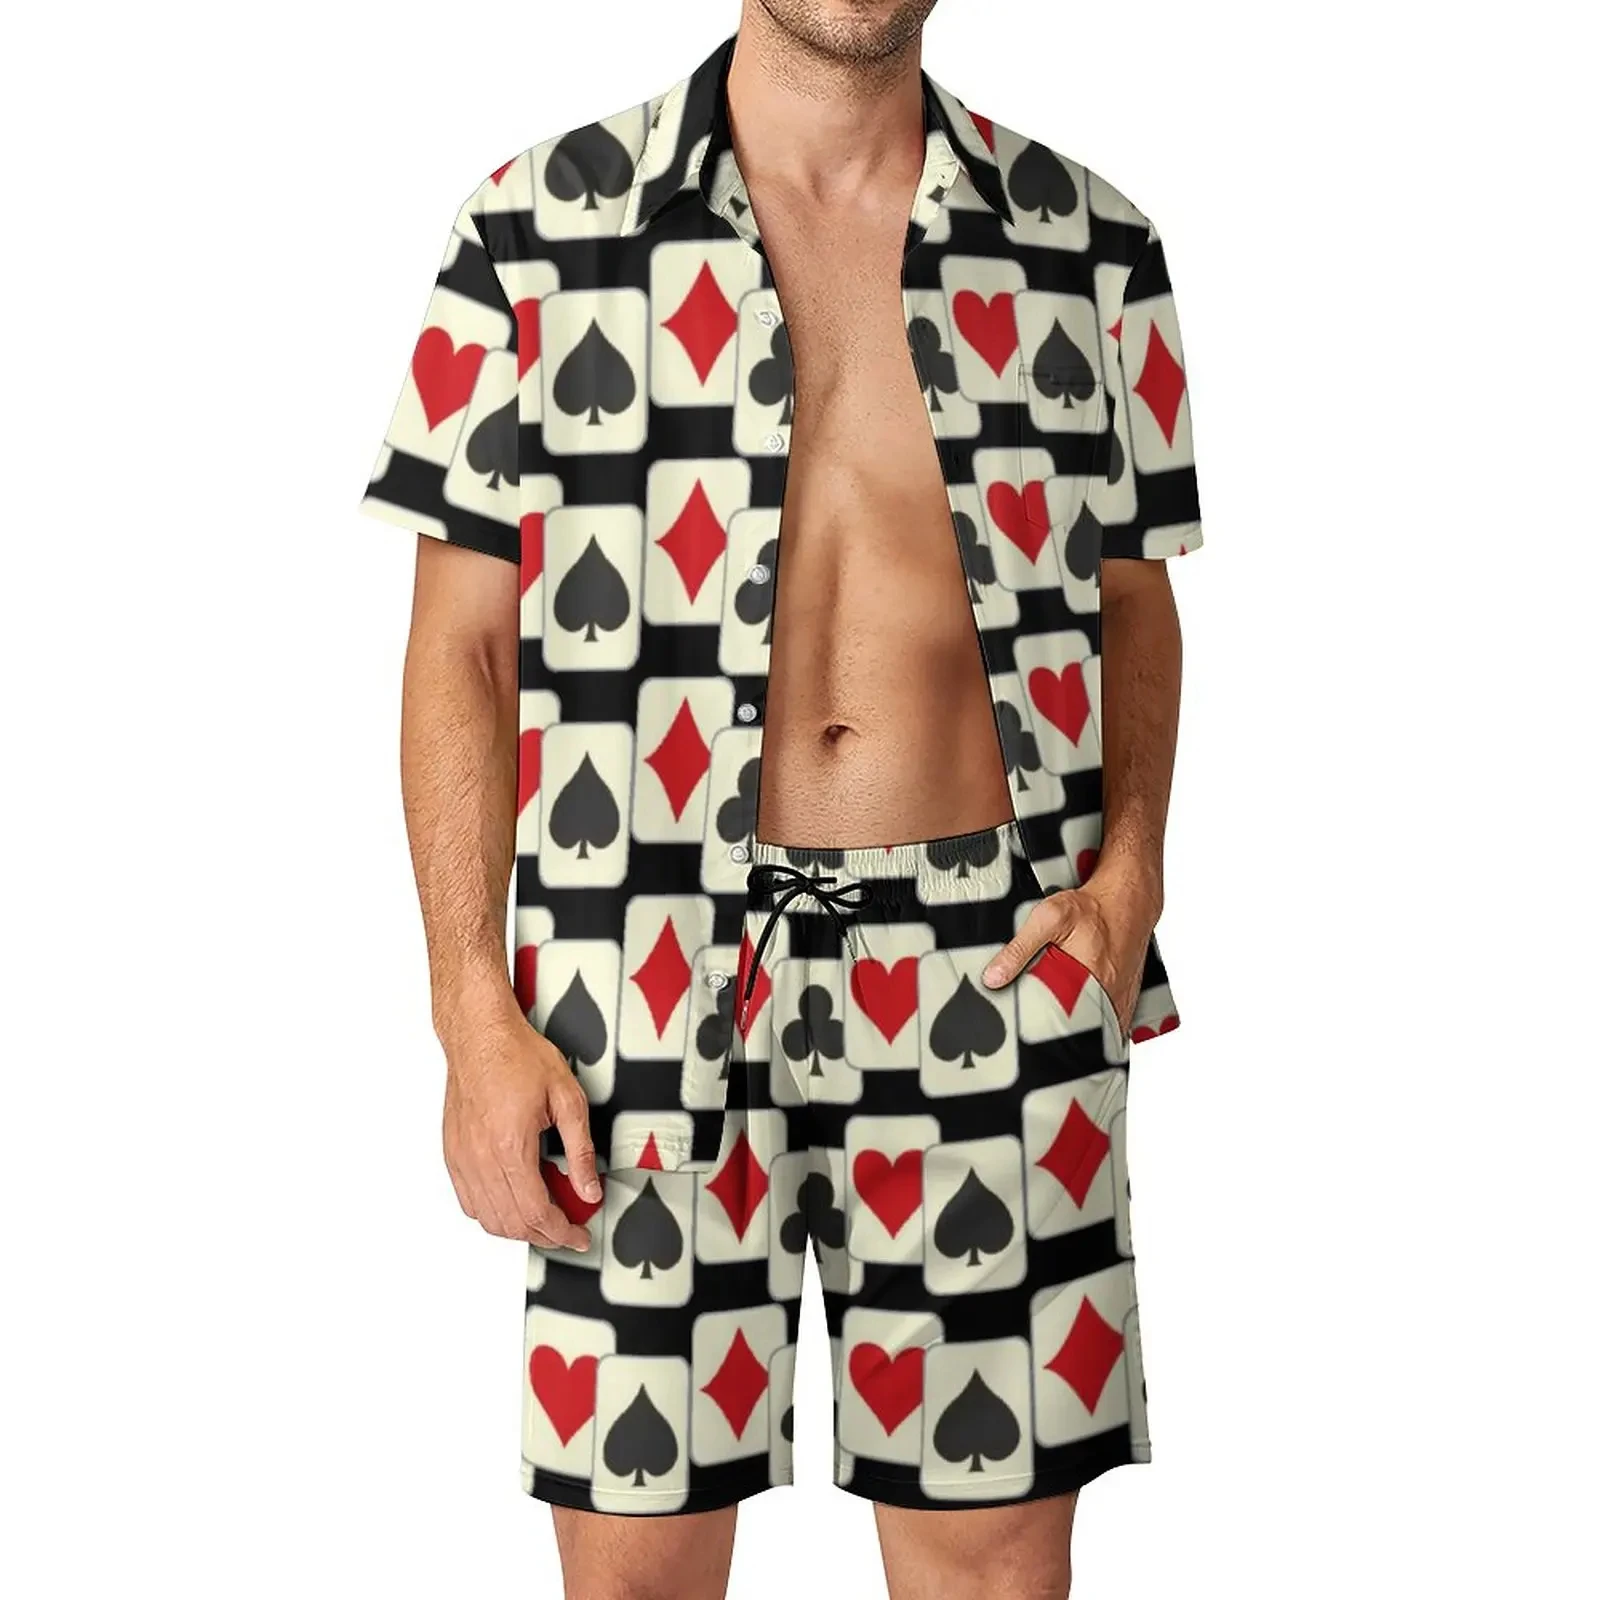 

Playing Poker Shirt Sets 3D Printed Men Casual Fashion Short Sleeves Shirts Oversized Beach Shorts Hawaiian Suits Summer Clothes